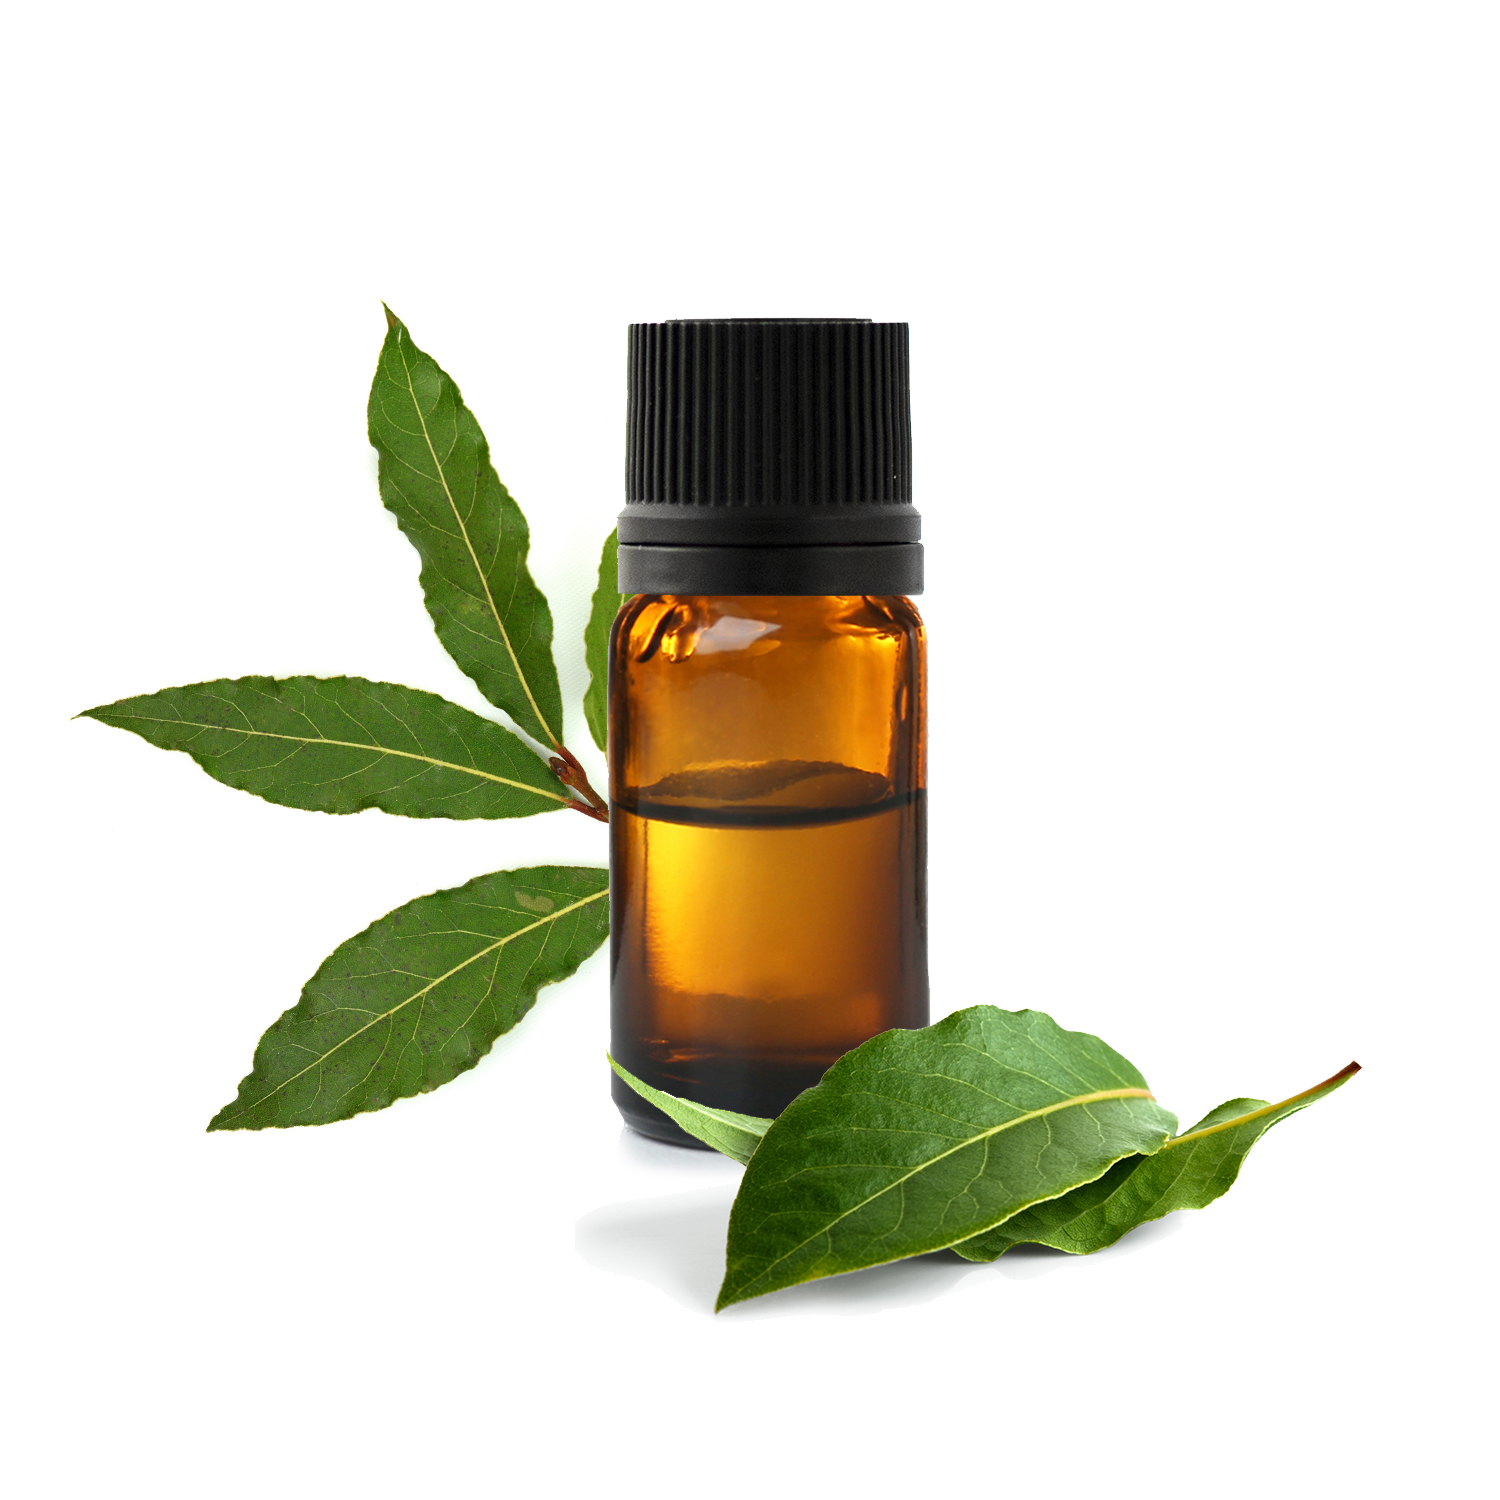 L'huile essentielle de tea tree : quelles sont ses vertus ?